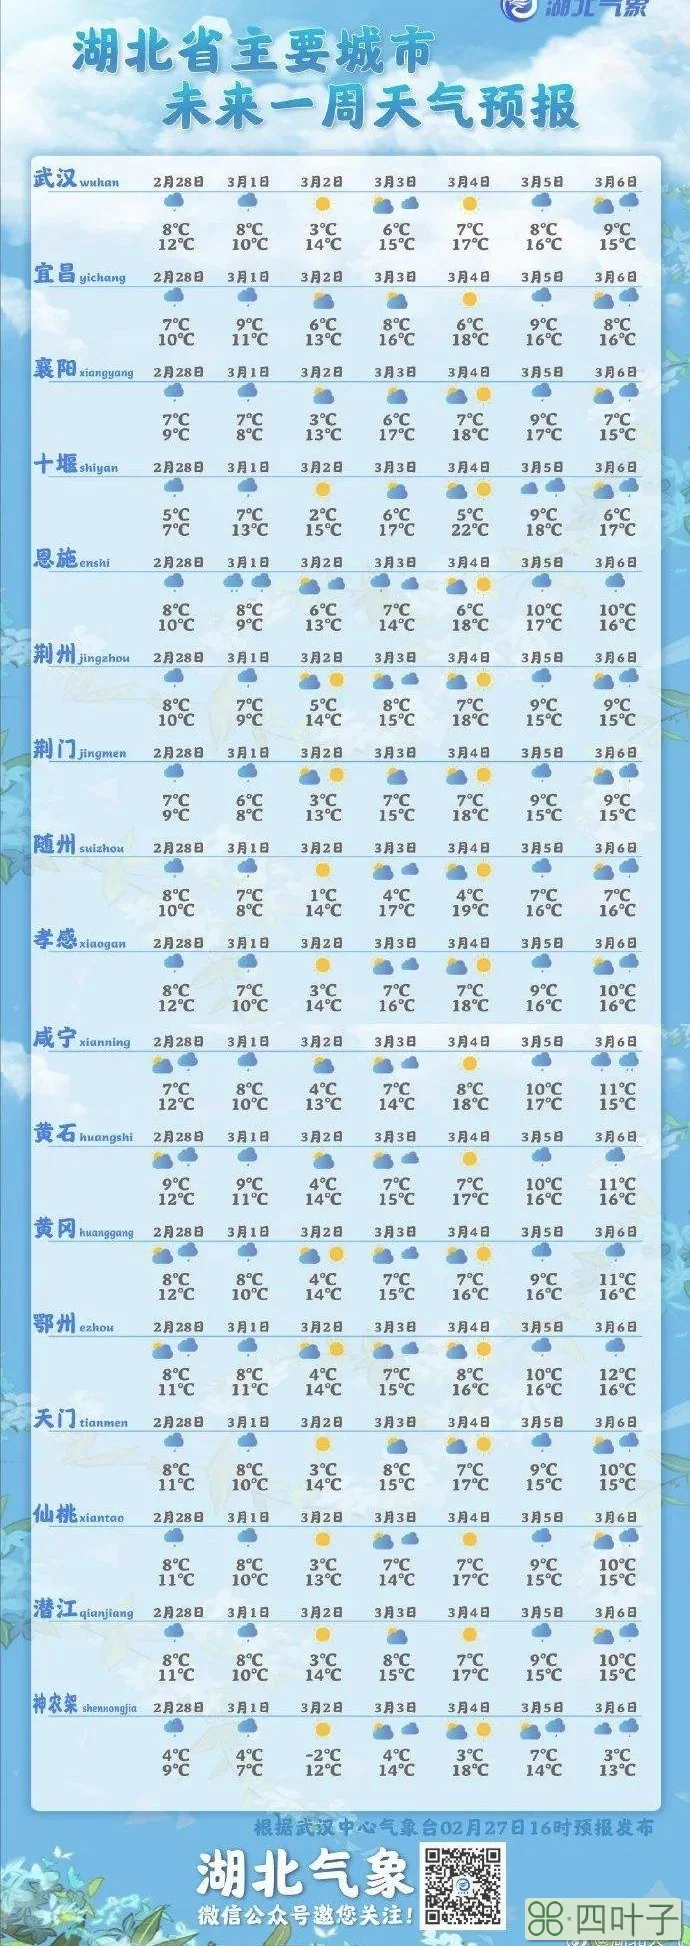 武汉未来3天天气武汉未来3天天气预报